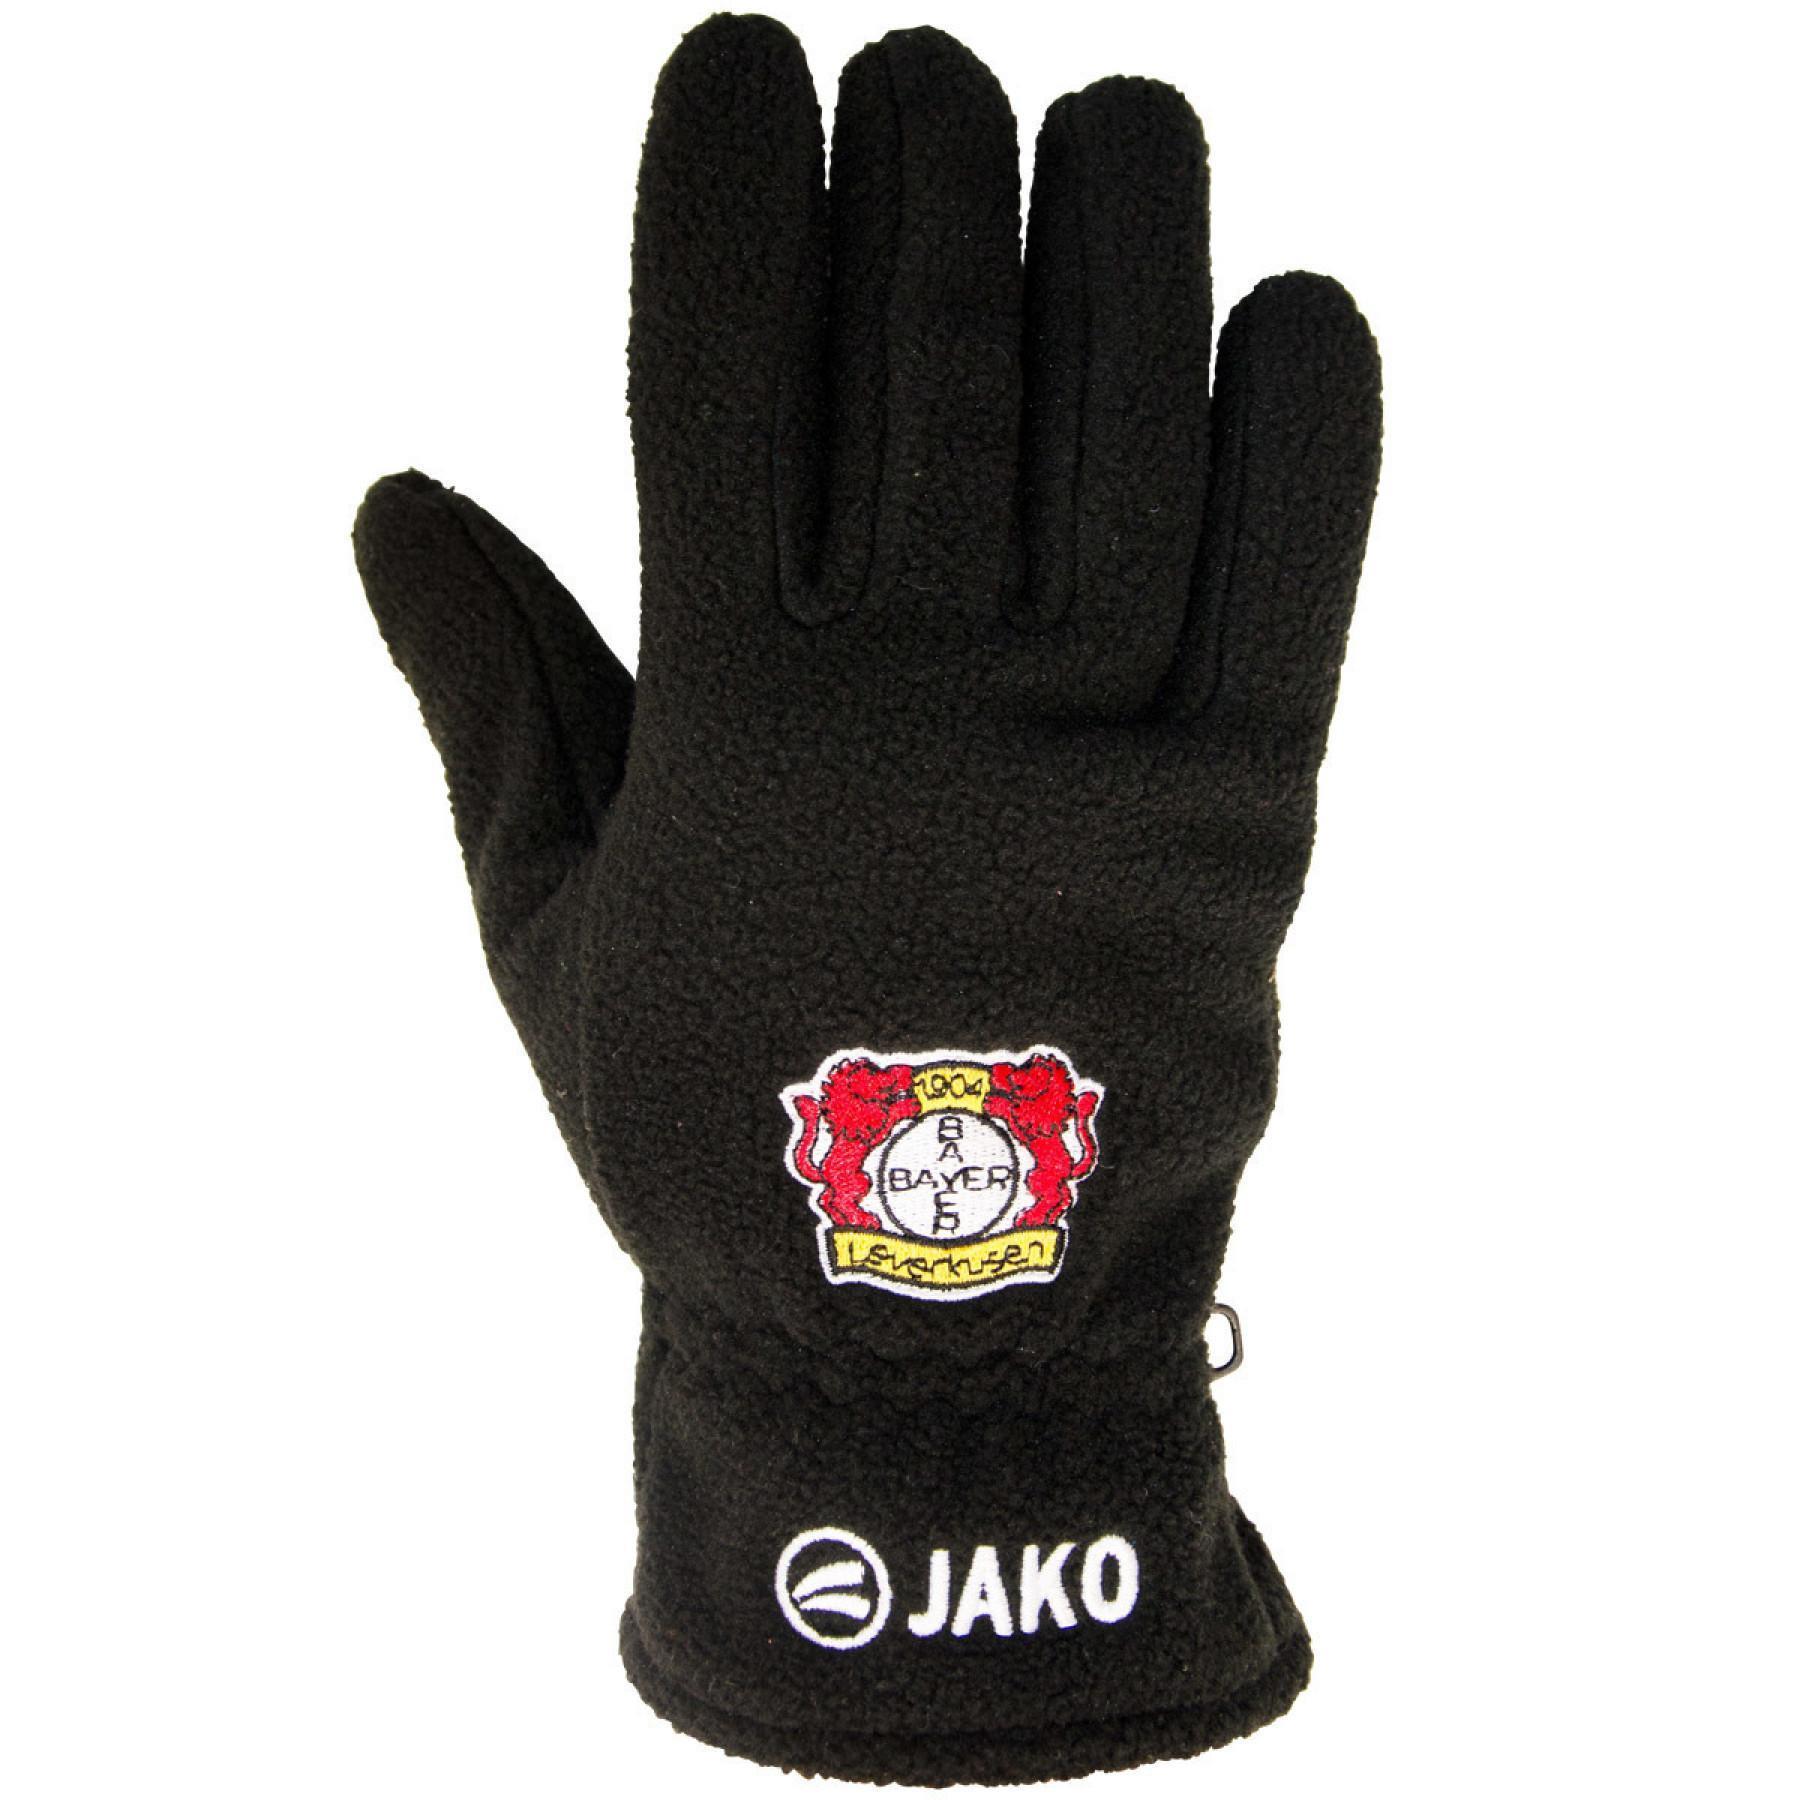 Fleece handschoenen Bayer Leverkusen 04